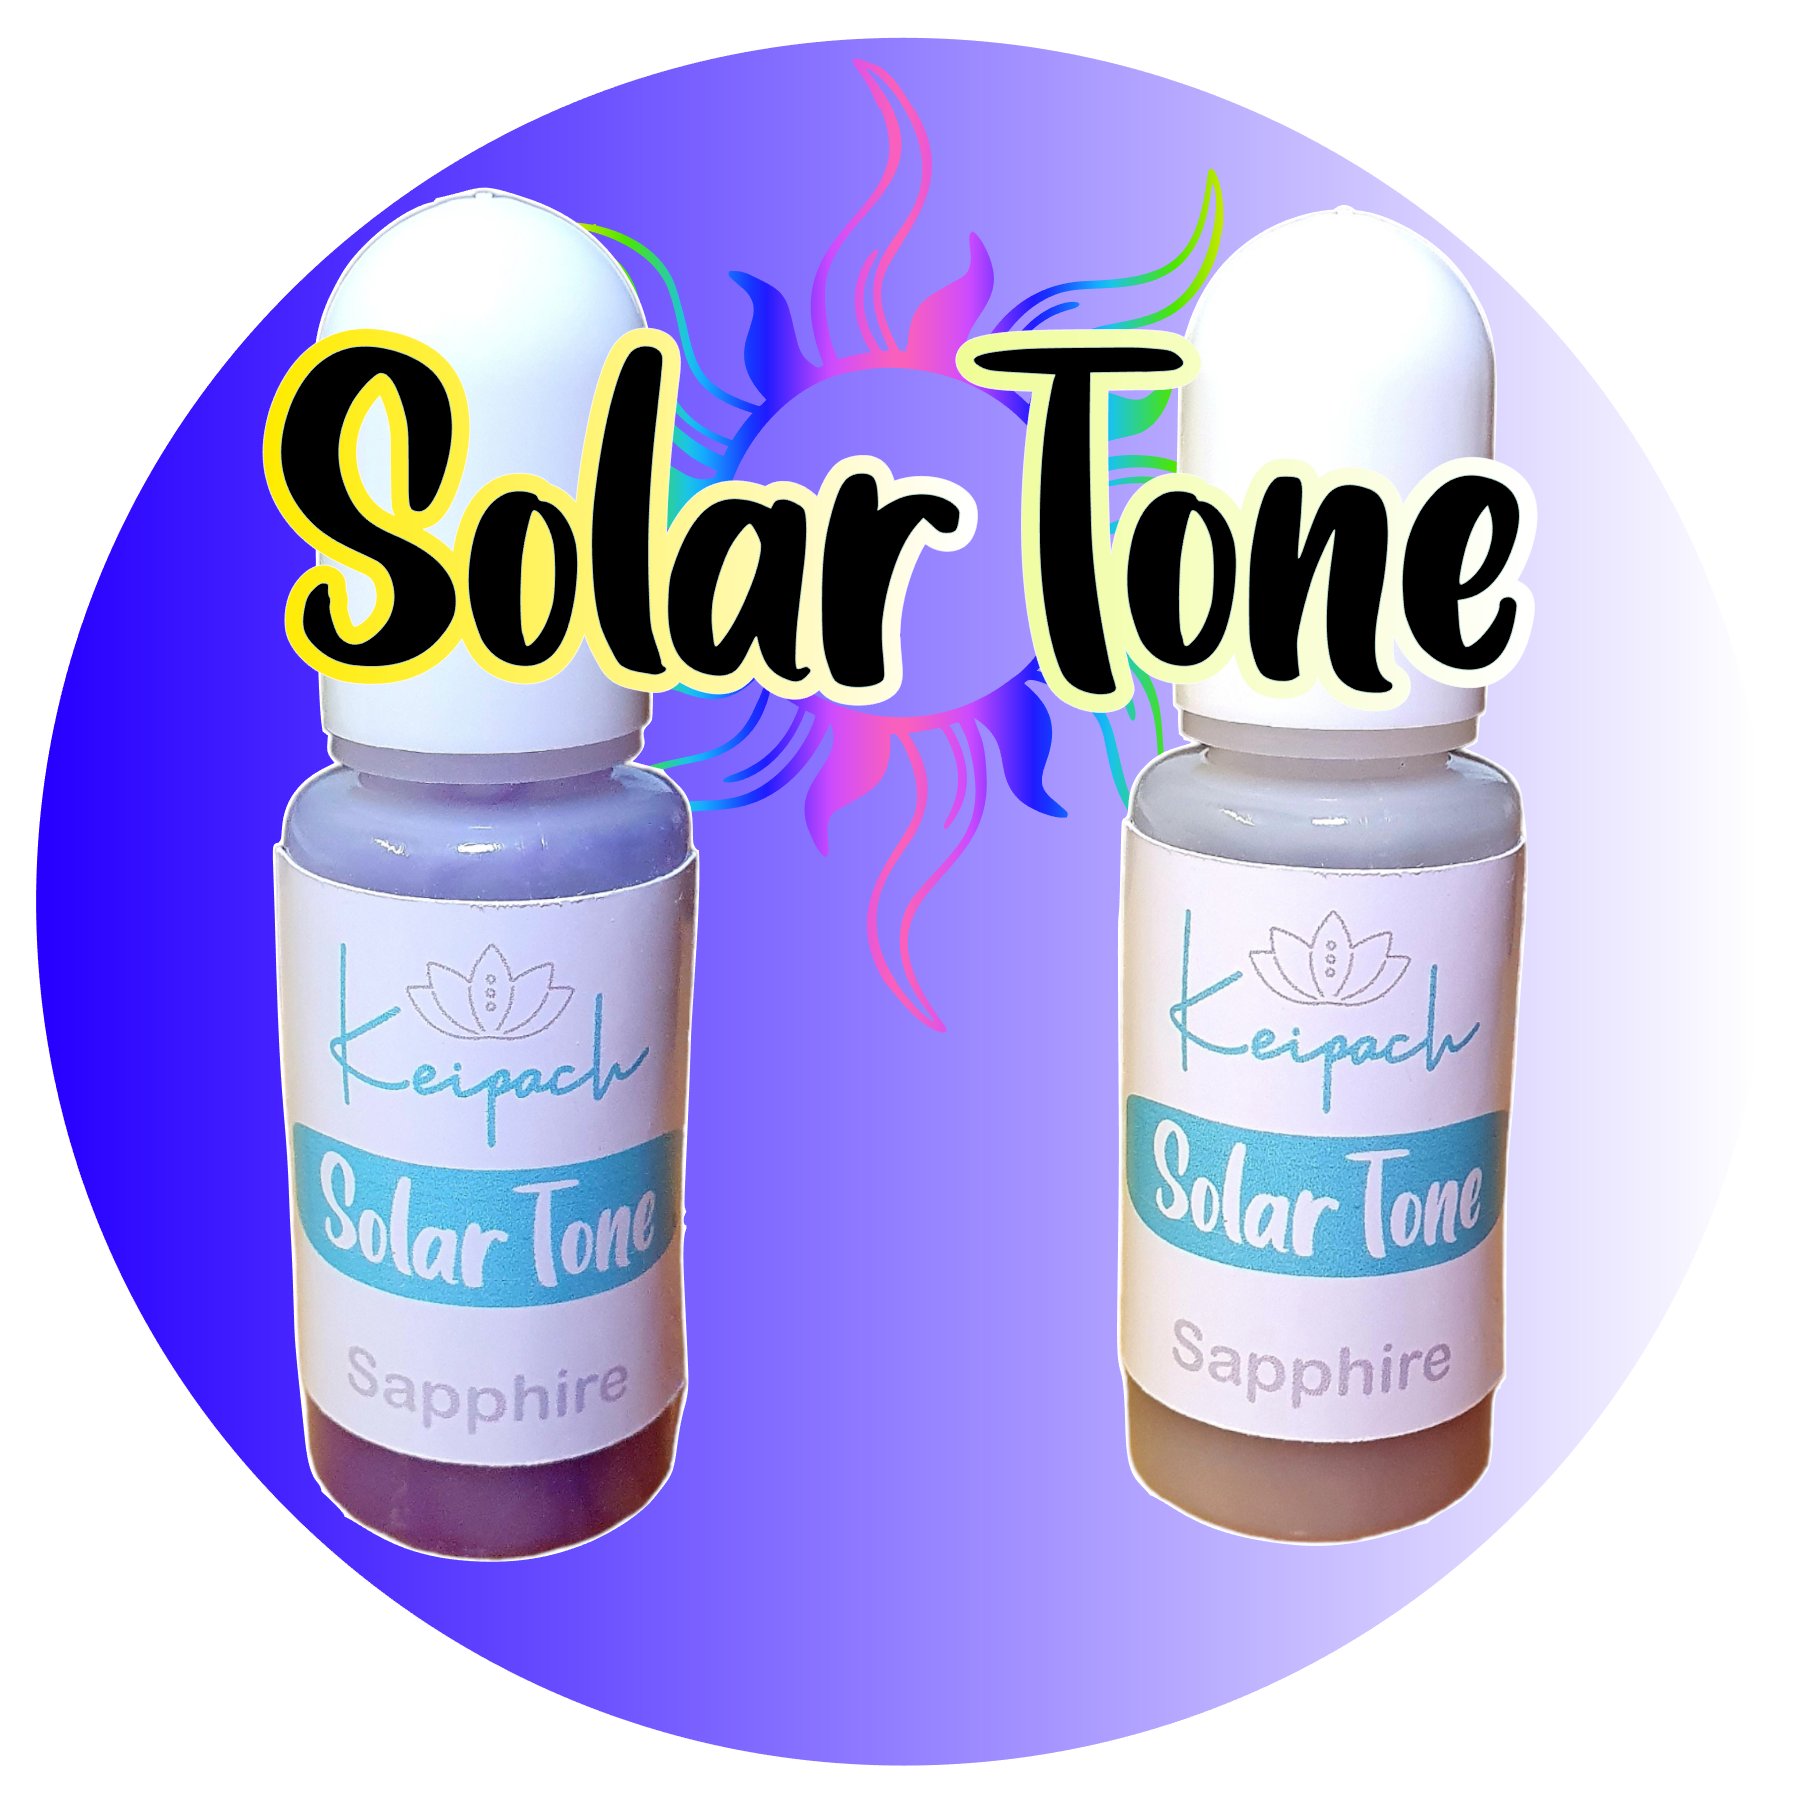 SolarTone Dye - Sapphire - Keipach